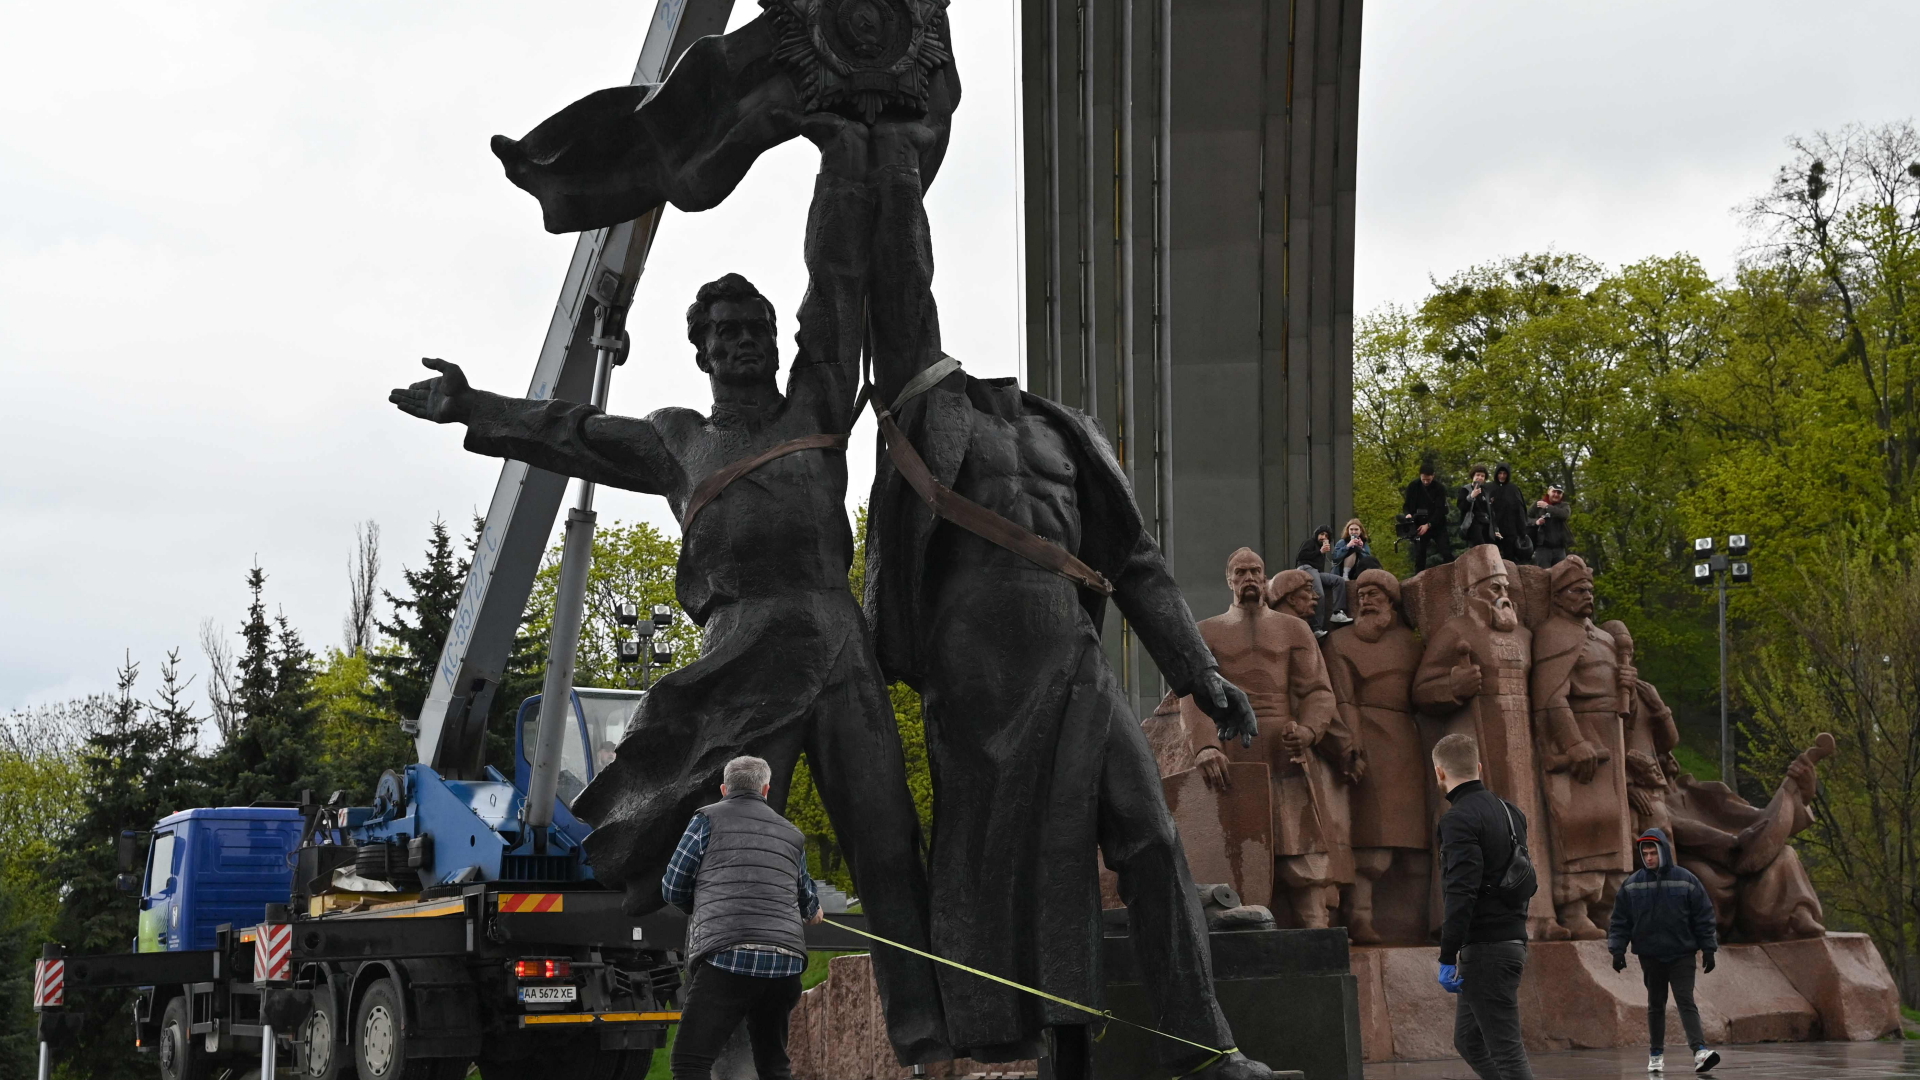 In Kiew wird ein Sowjetdenkmal demontiert, das die Freundschaft zwischen der Ukraine und Russland symbolisieren soll. | AFP